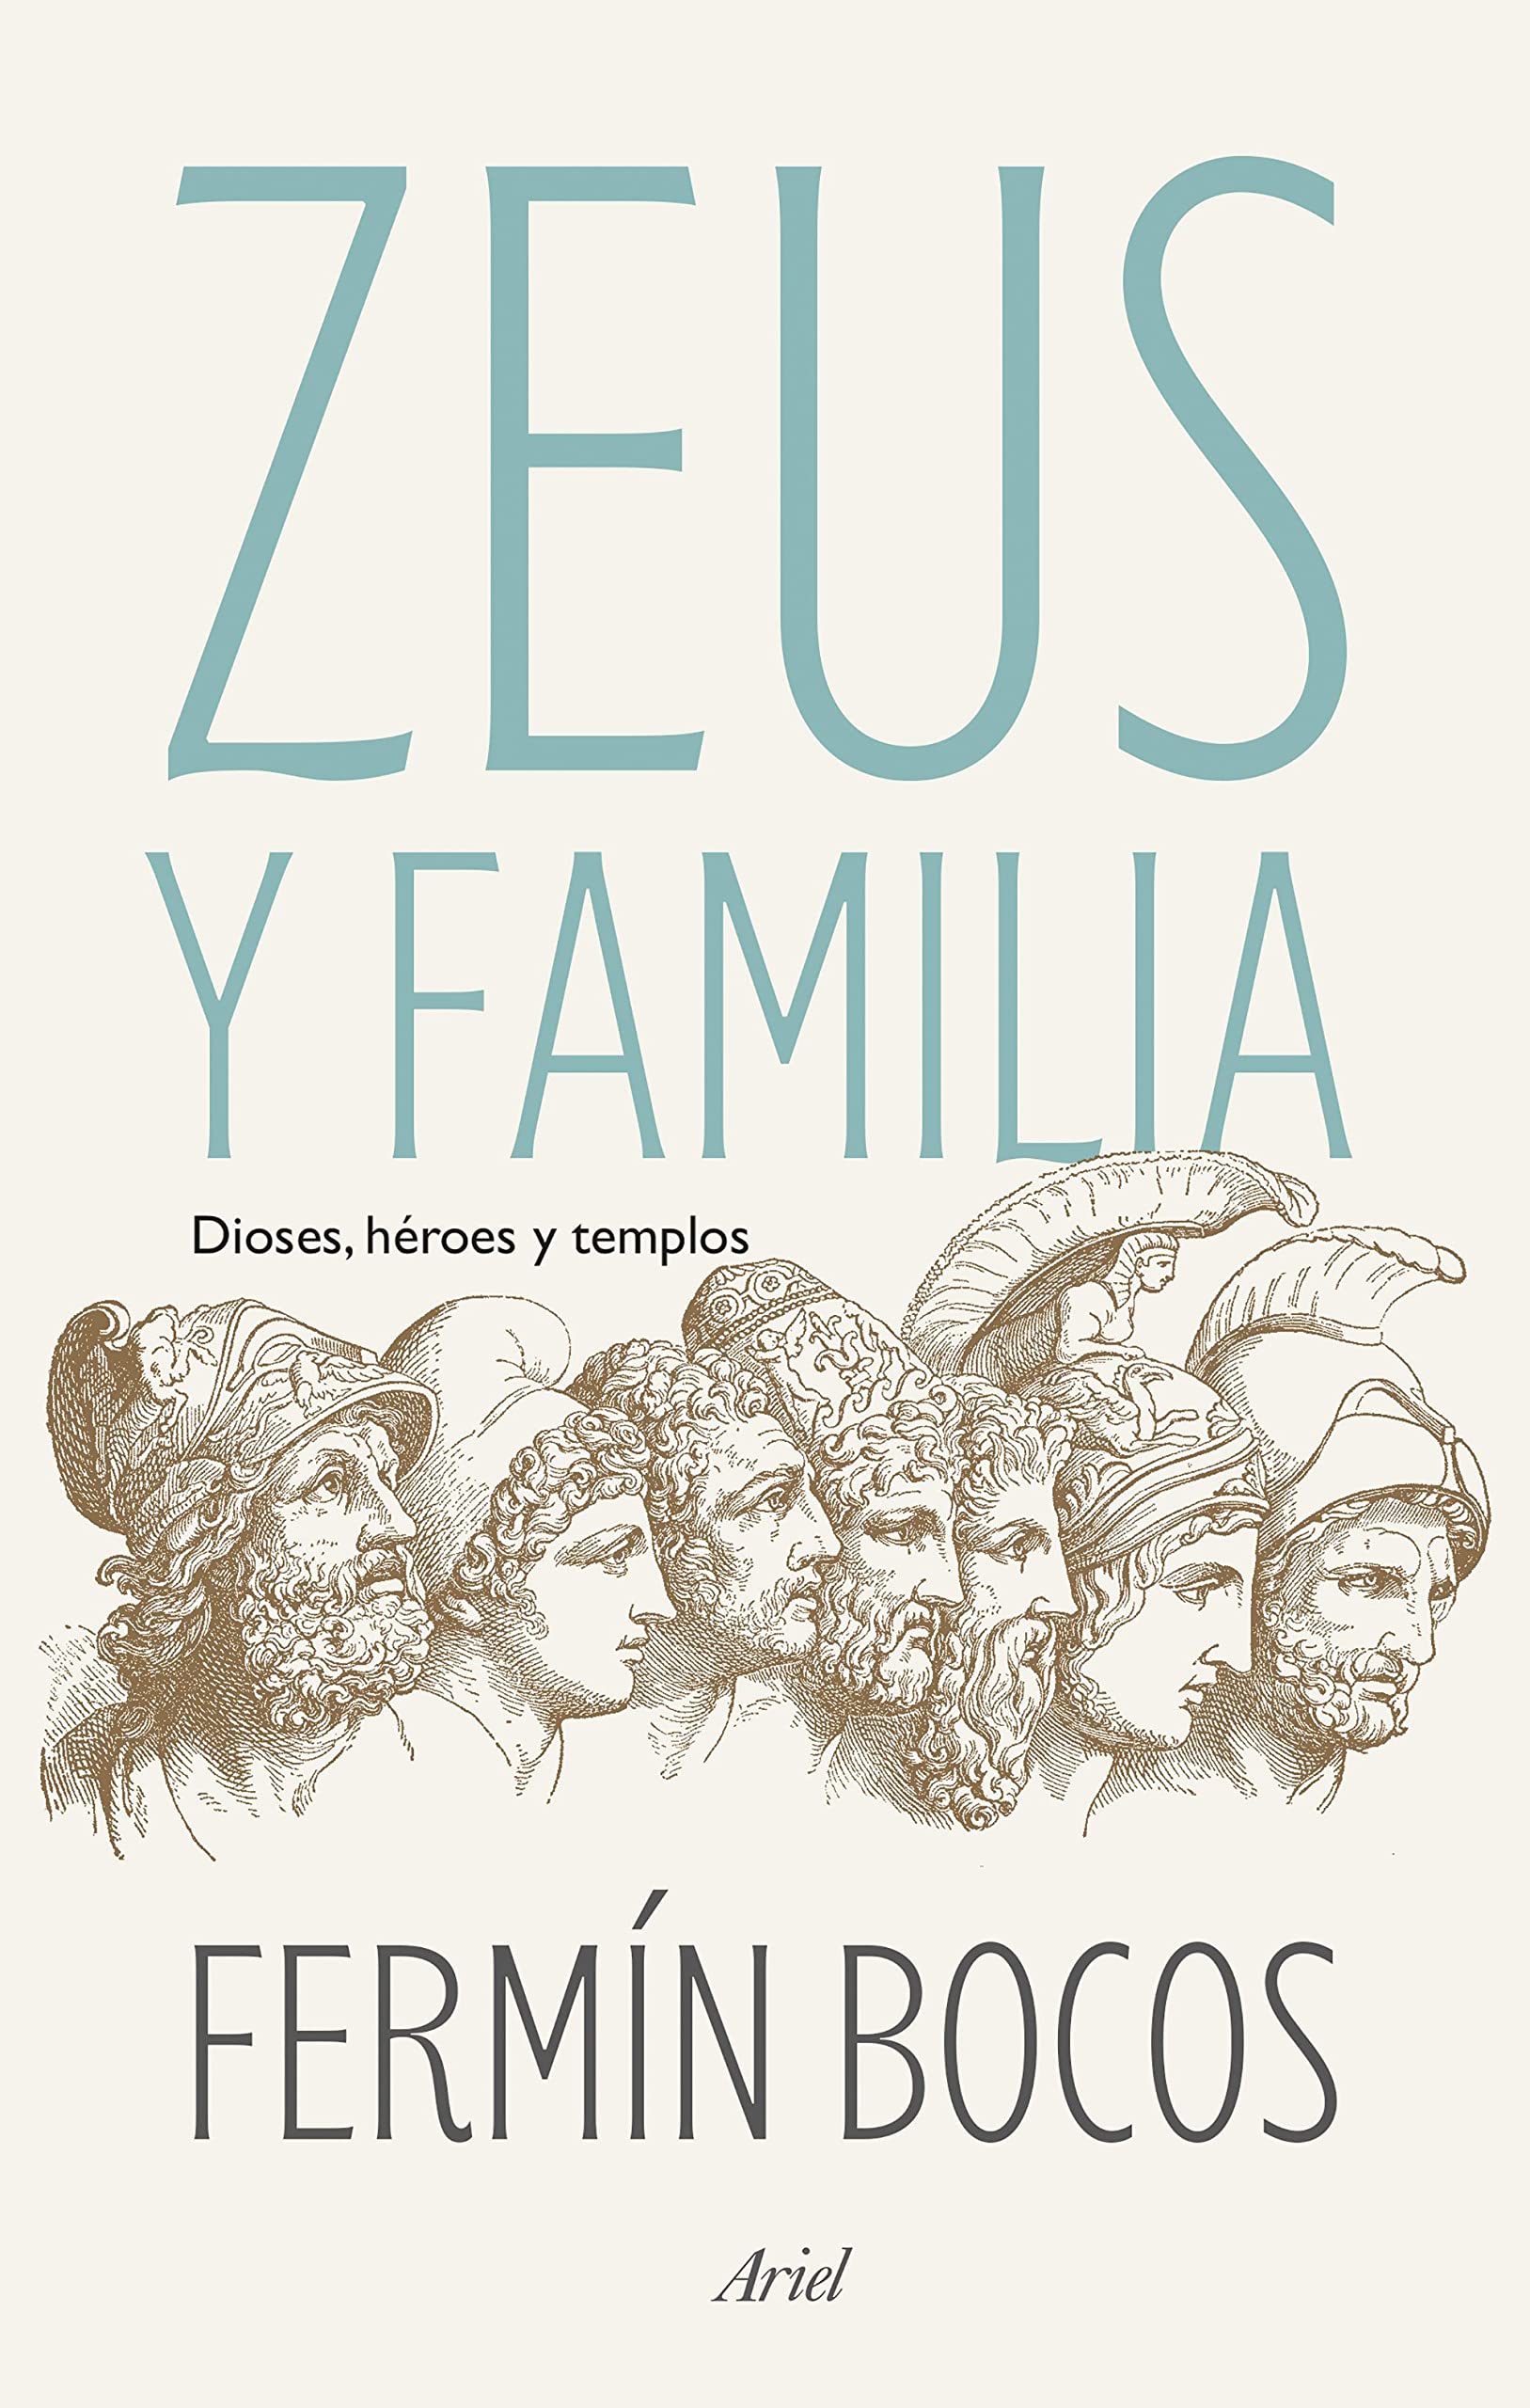 Zeus y familia, una historia inmortal